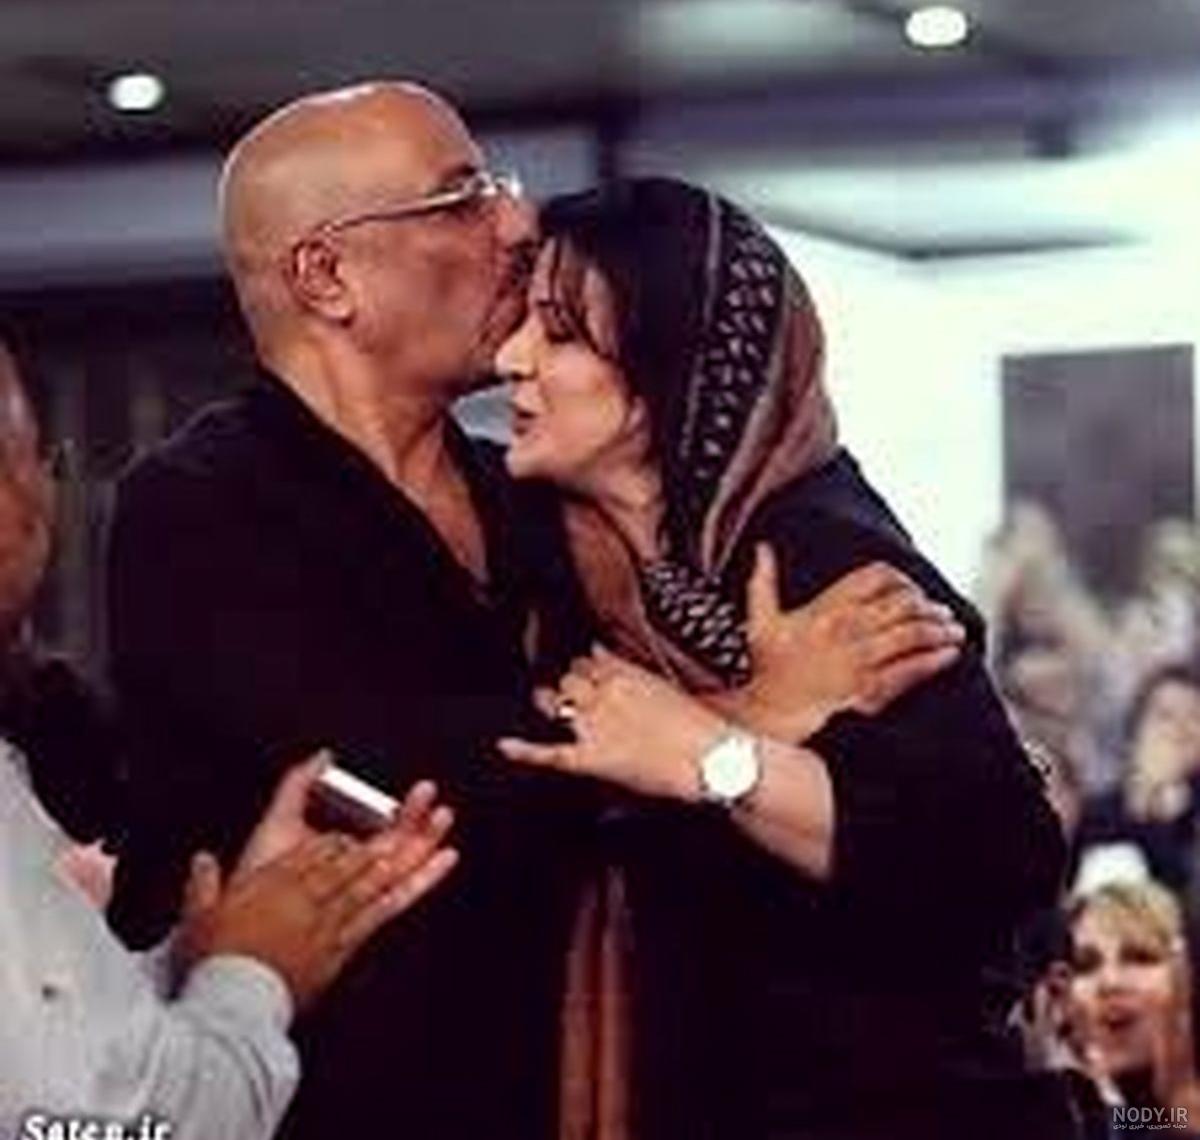 عکسی جالب و دیده نشده از امیر جعفری یکی از بازیگران توانمند ایرانی در حال بوسیدن زنش ریما رامین فر در ملا عام منتشر شد.